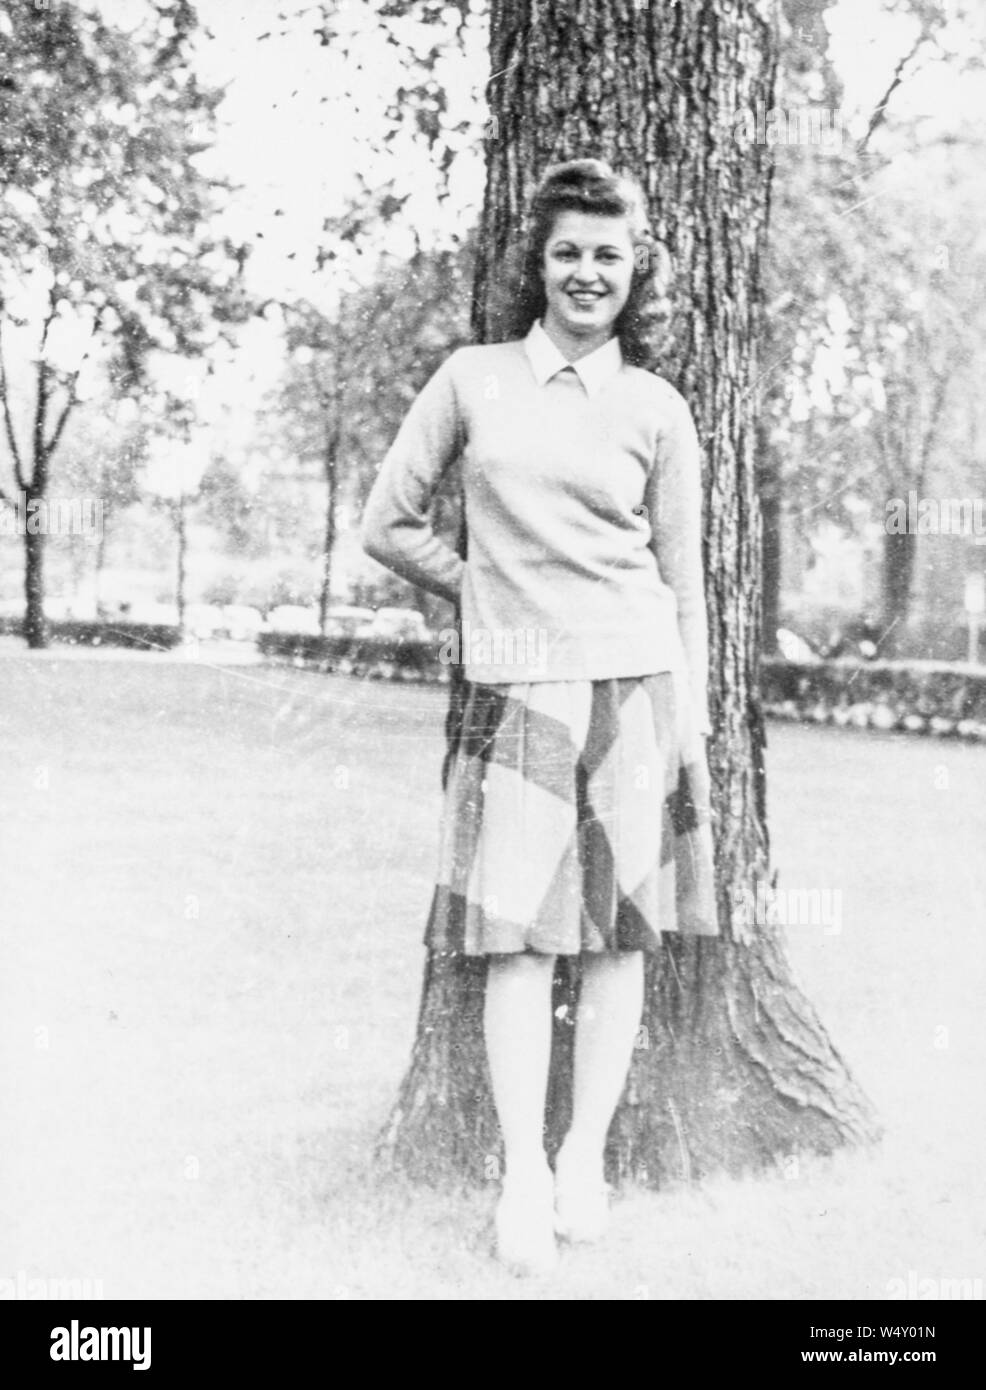 Junge Frau mit Bluse und Rock, vor einem Baum im Freien posieren, lächelnd mit der einen Hand hinter den Rücken und die andere an Ihrer Seite, 1950. () Stockfoto